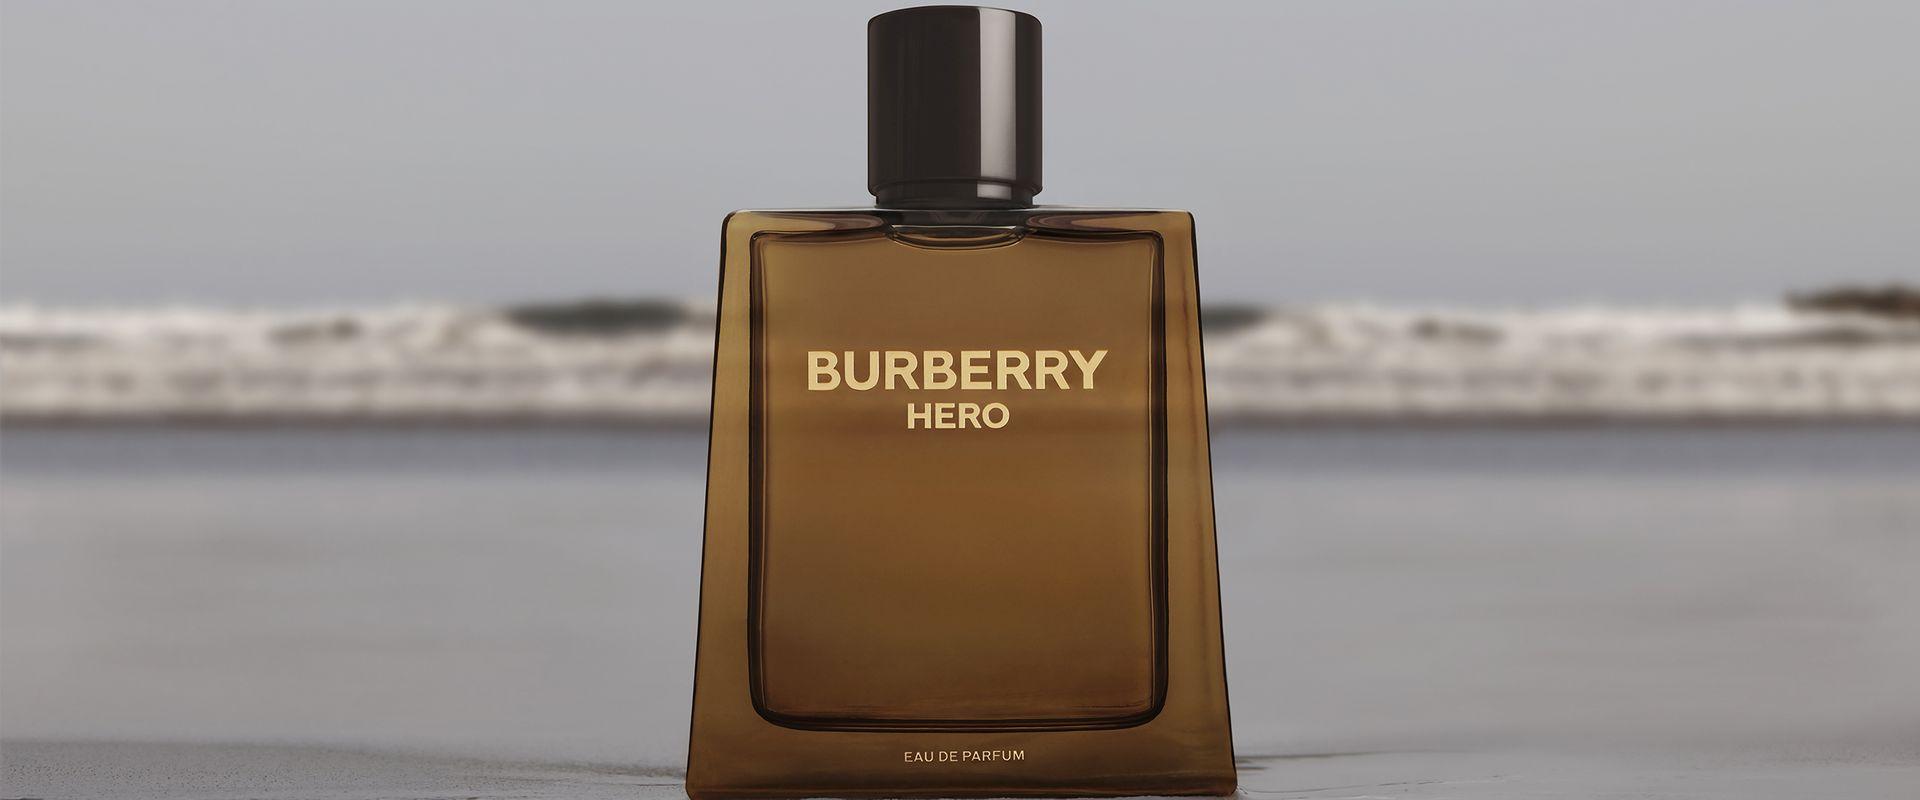 Burberry Hero woda perfumowana - żywiczne aromaty dla odważnych wrażliwców